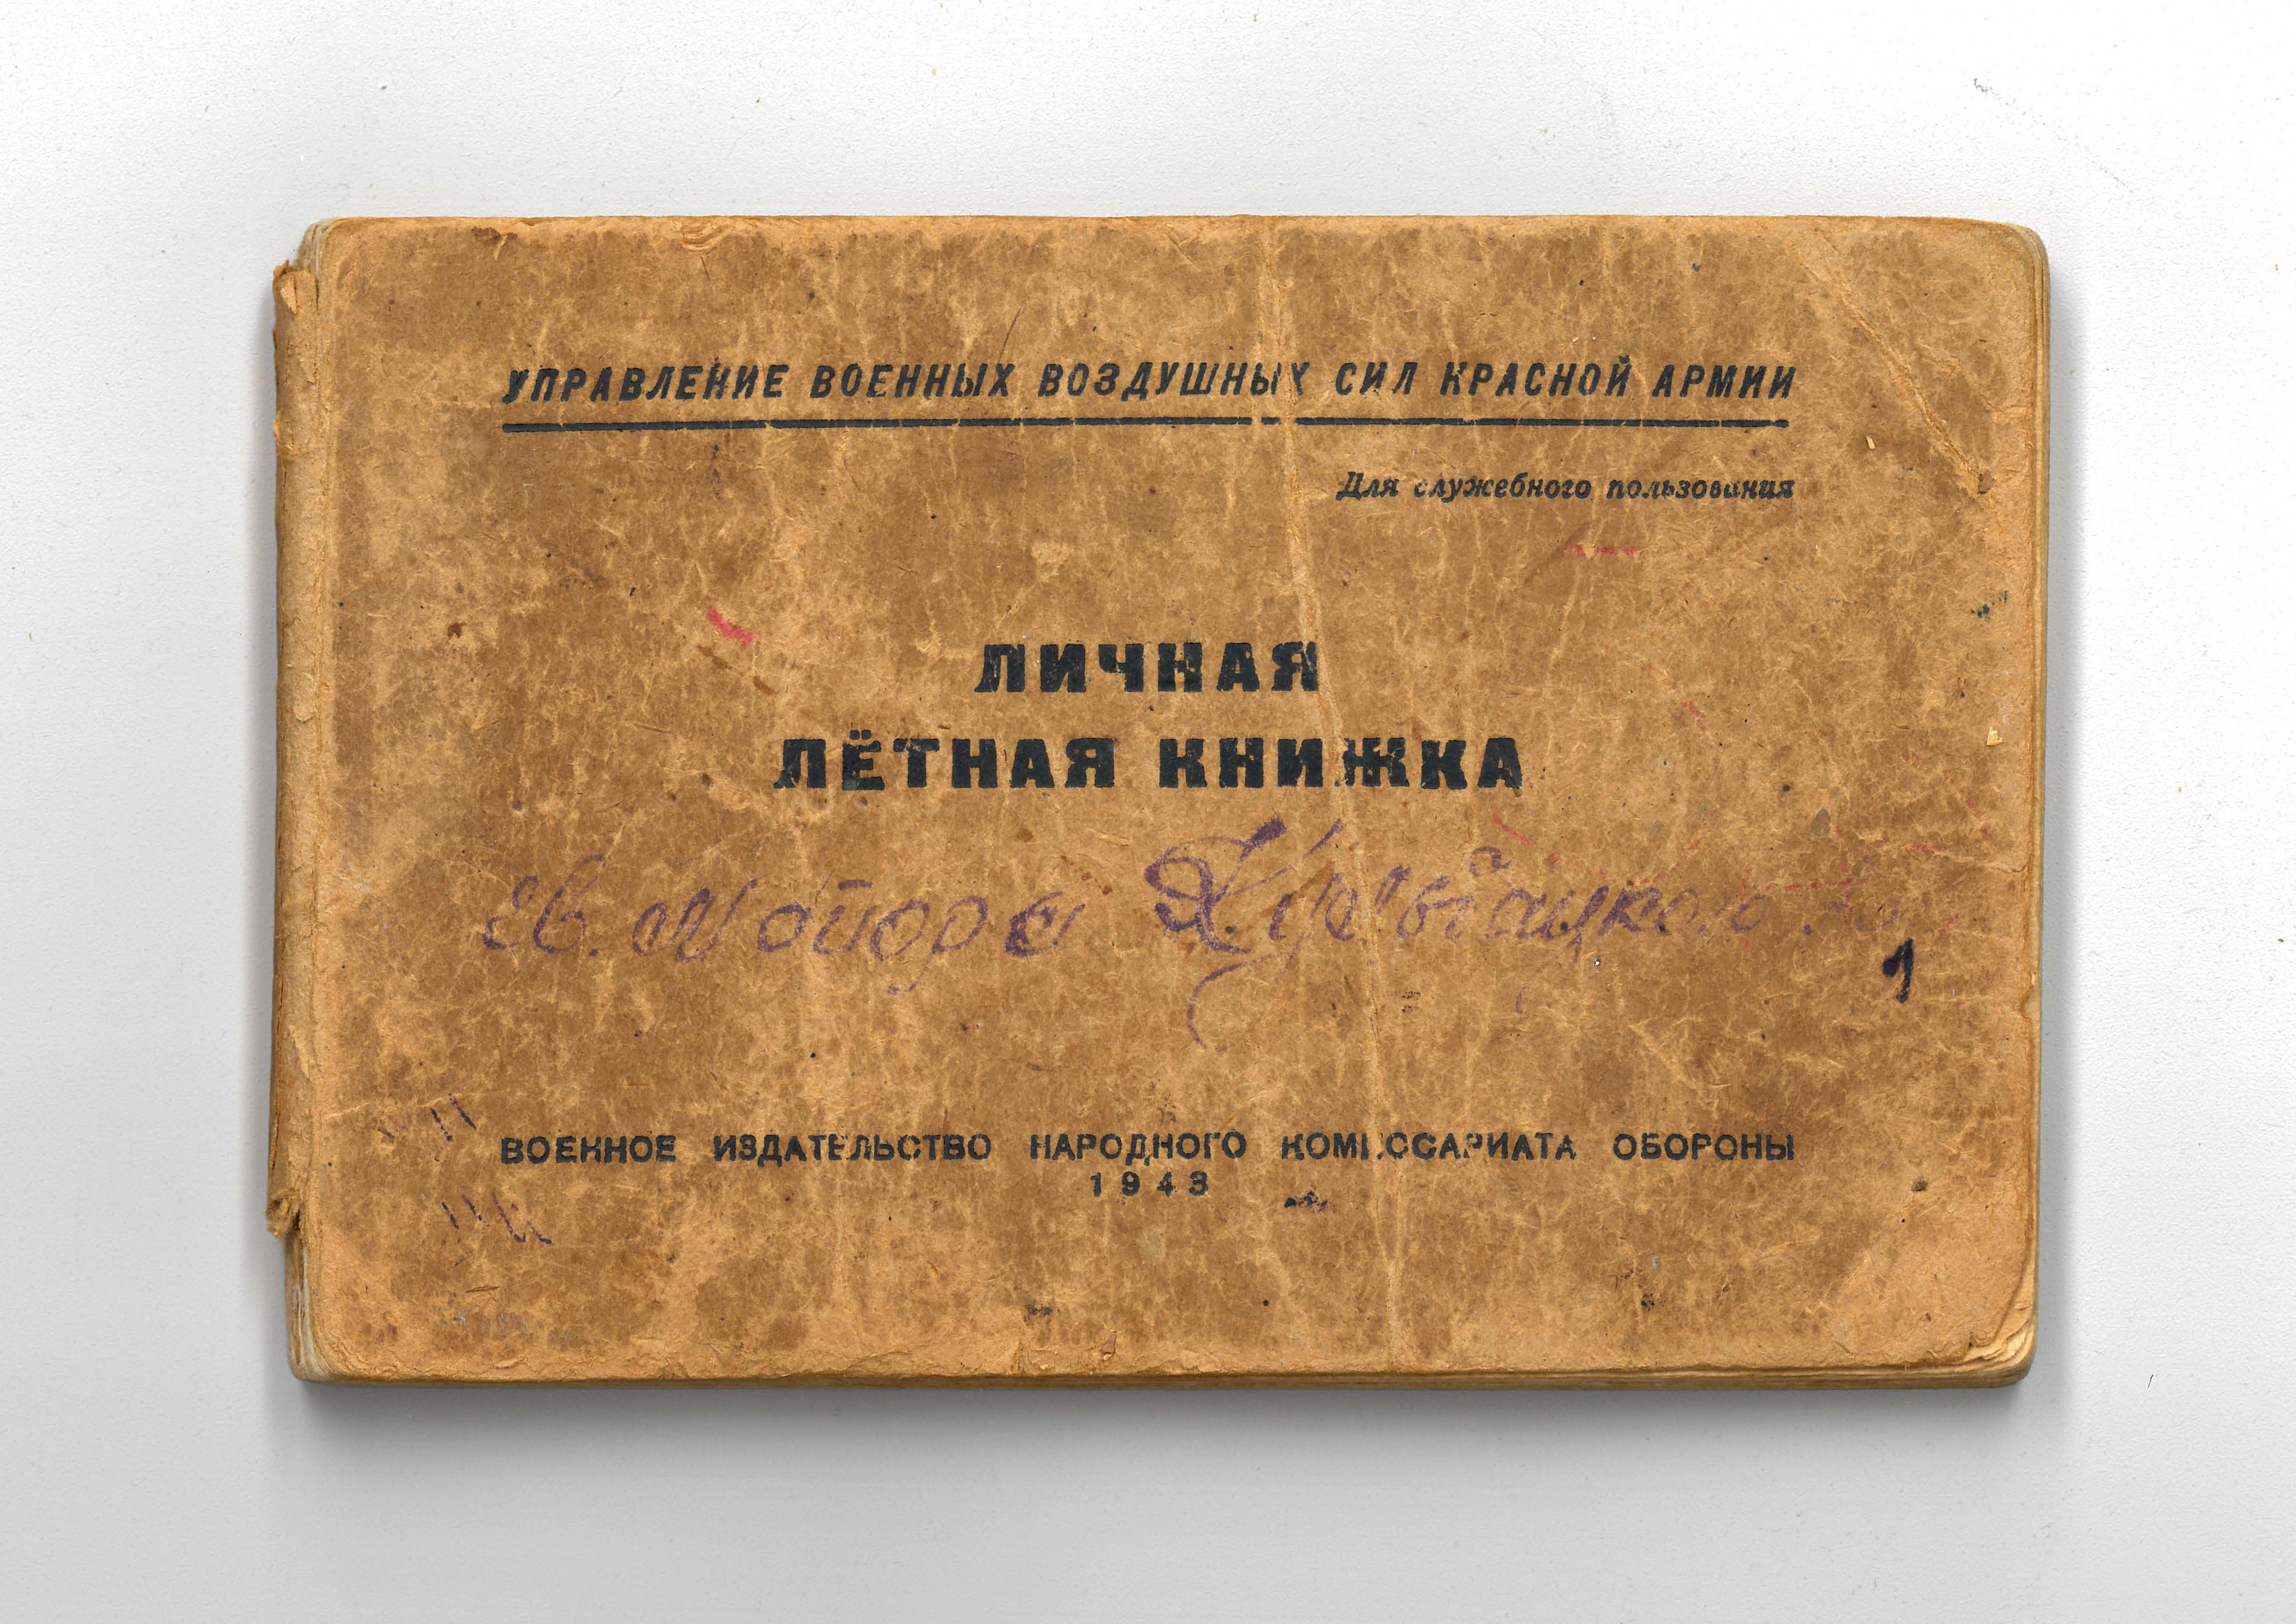 Bordbuch des Gardemajors Kul'backij, Anton Jakovlevič mit Attestationsurkunde vom 26.05.1948 (Deutsch-Russisches Museum Berlin-Karlshorst CC BY-NC-SA)